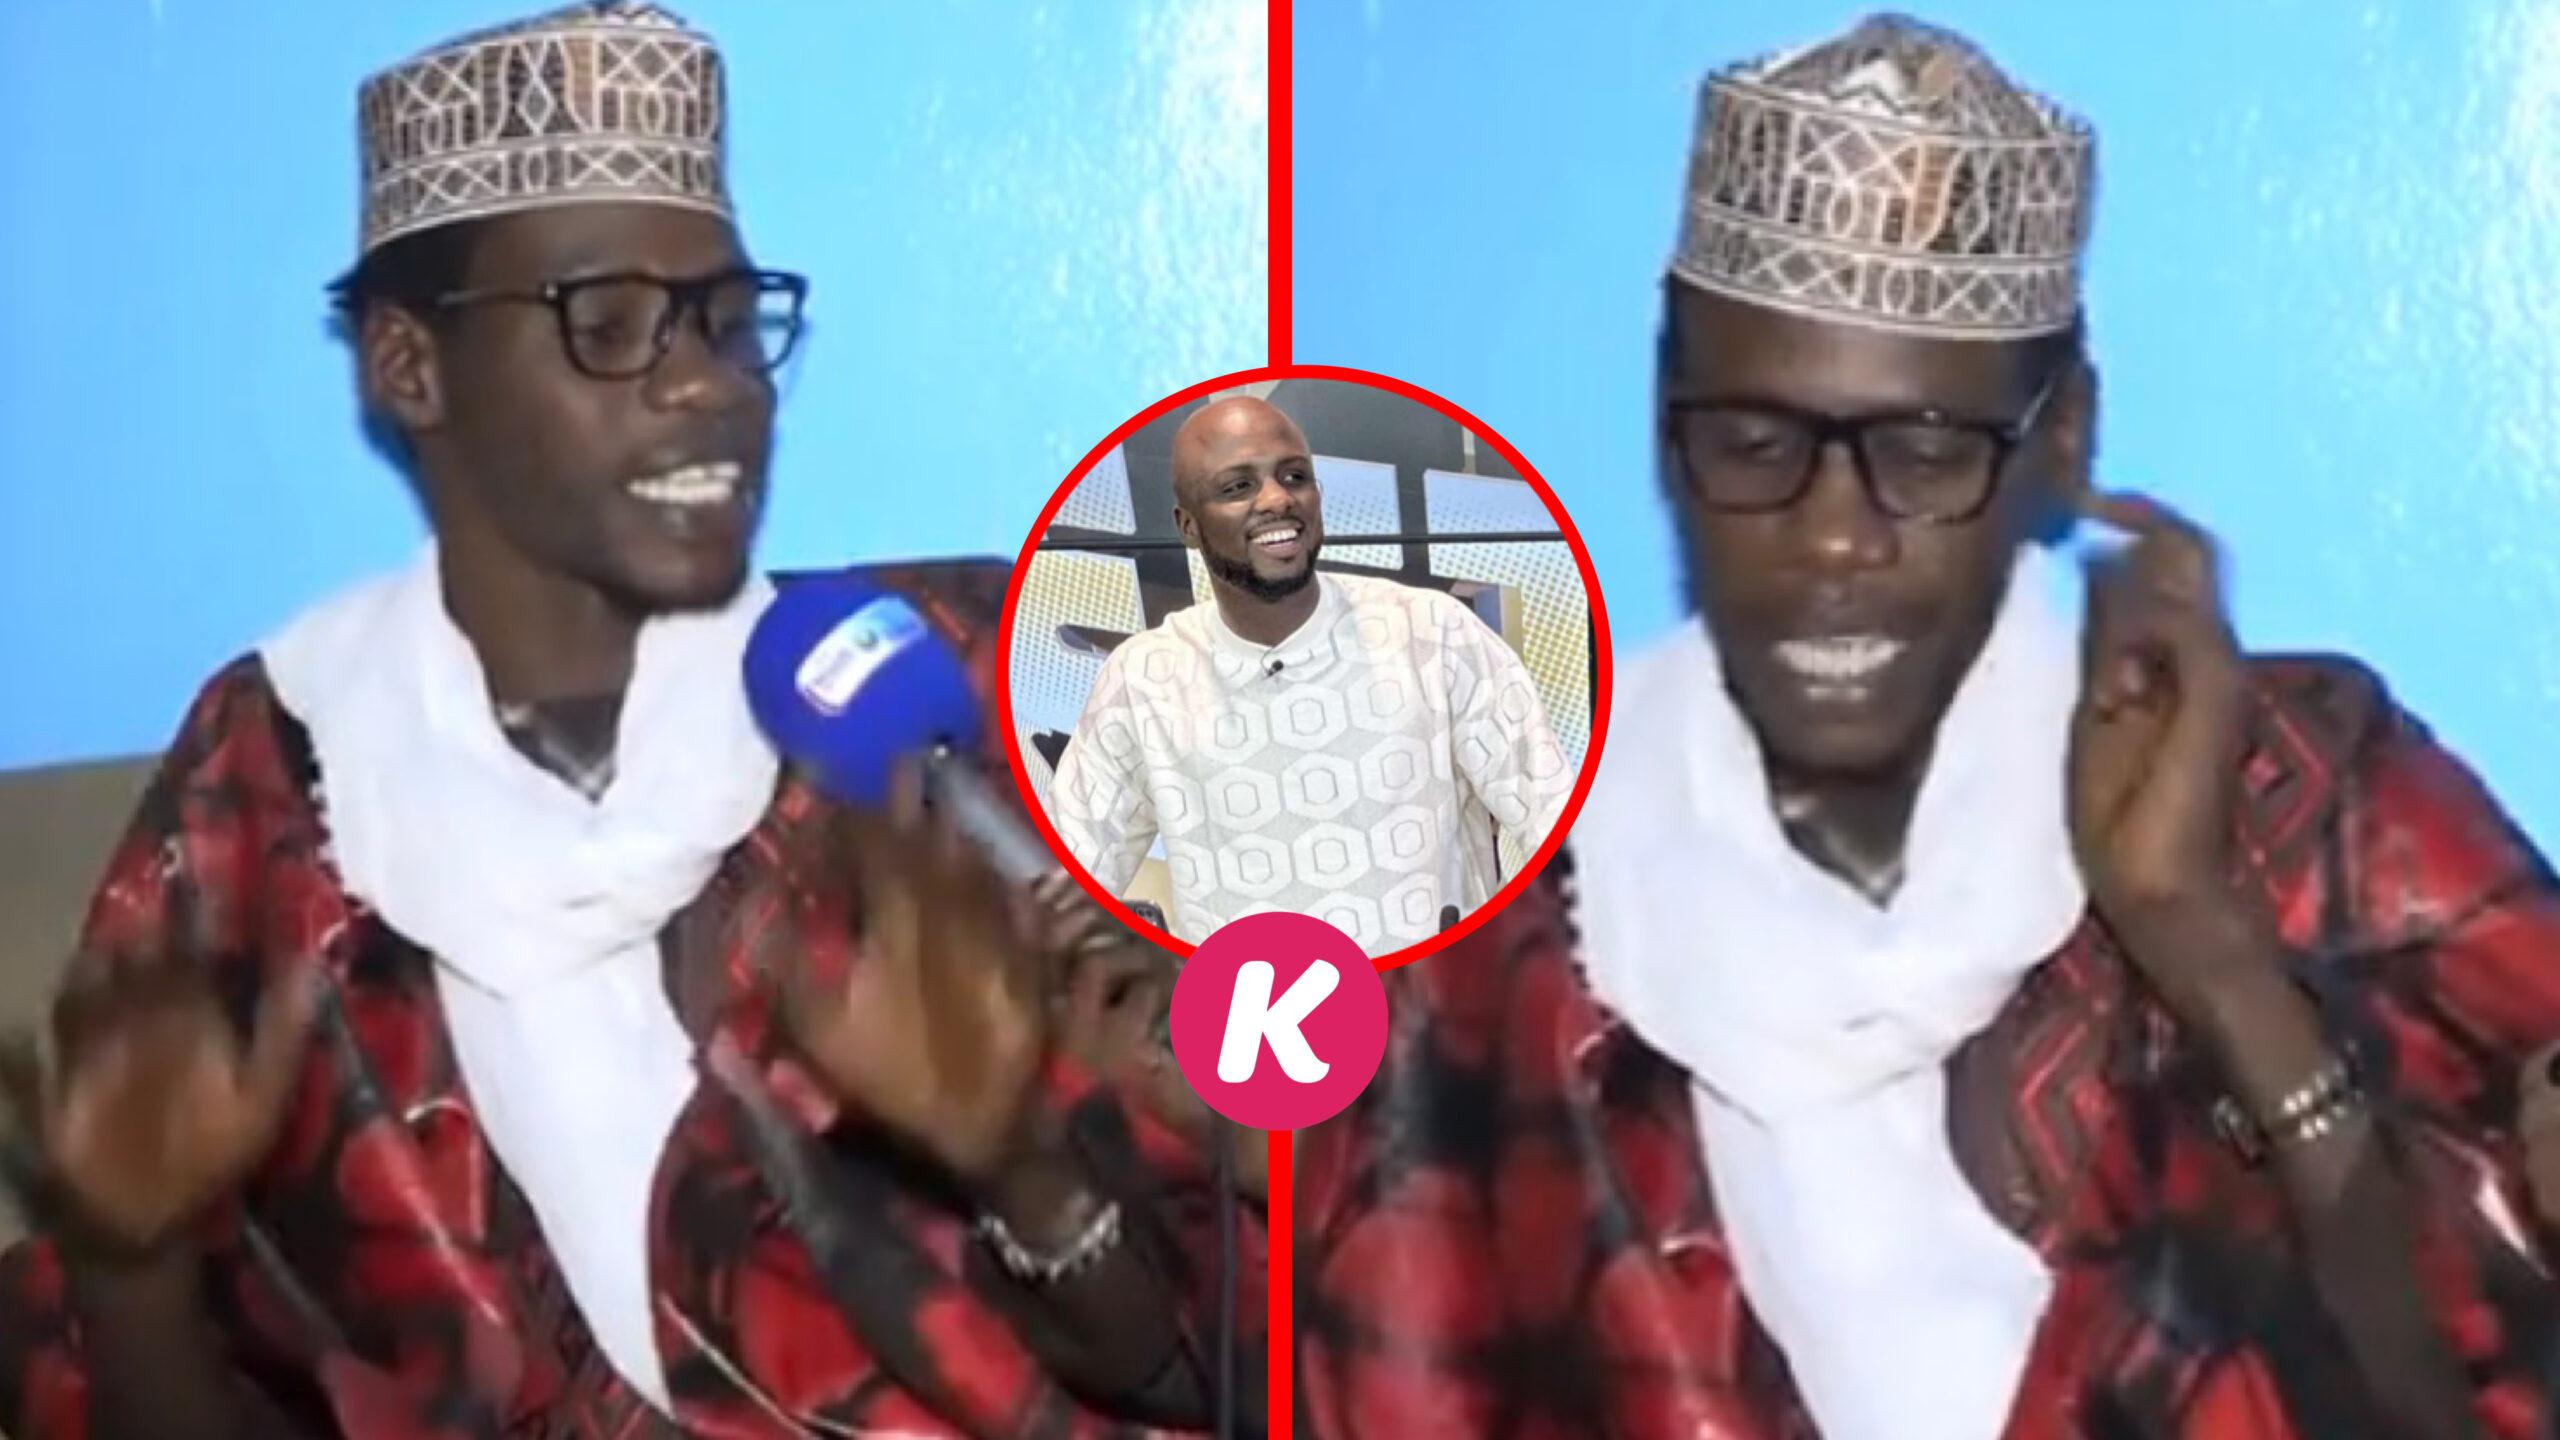 (Vidéo) – Abba No Stress mola révélé ? Le comédien Thioukou s’énerve et donne une réponse sèche.